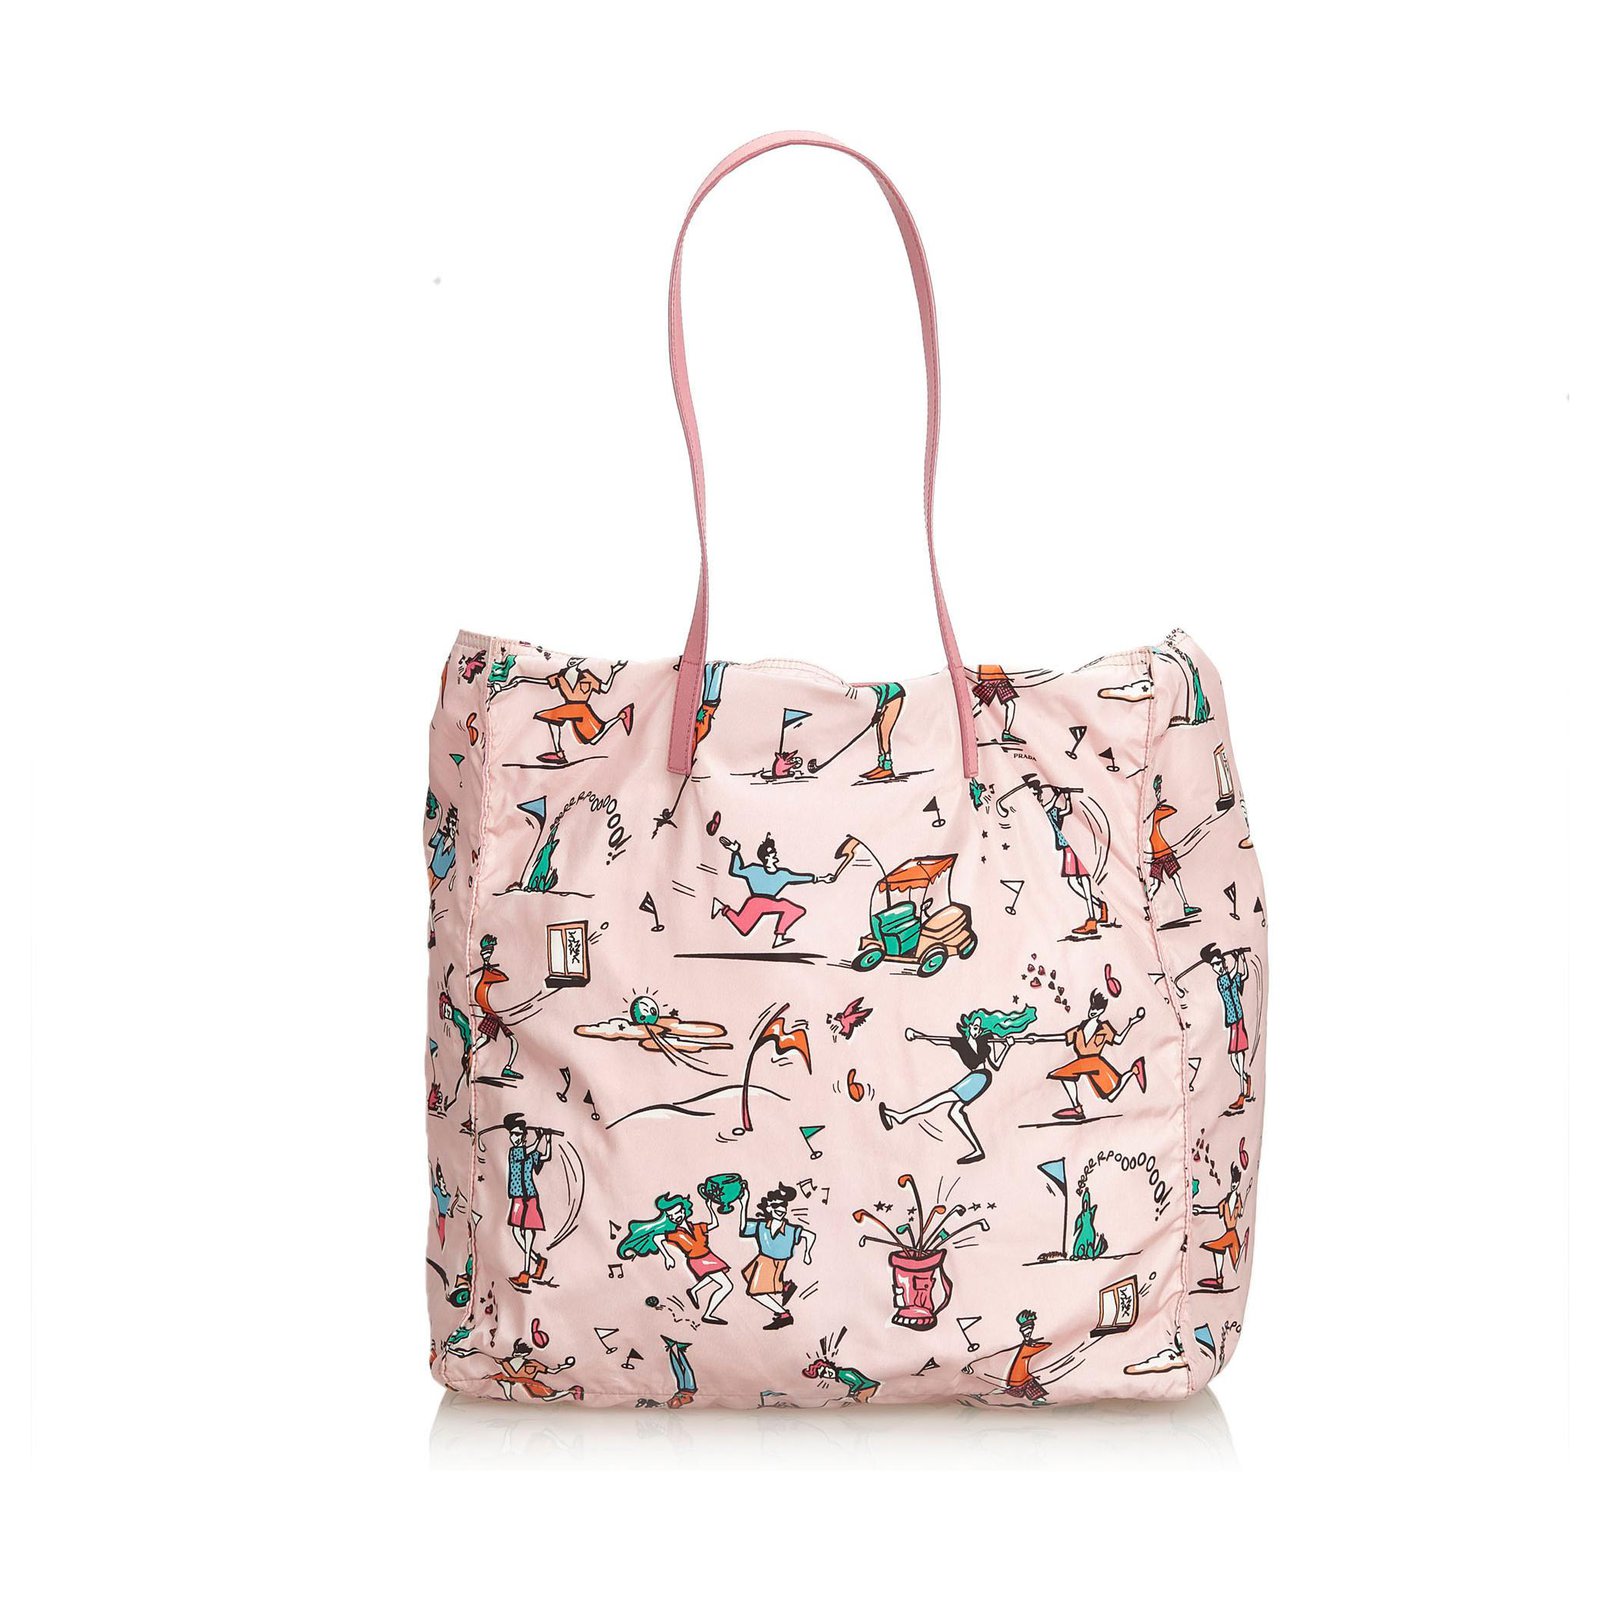 Prada Pink Tessuto Nylon Convertible Tote Bag with Strap 863147 at